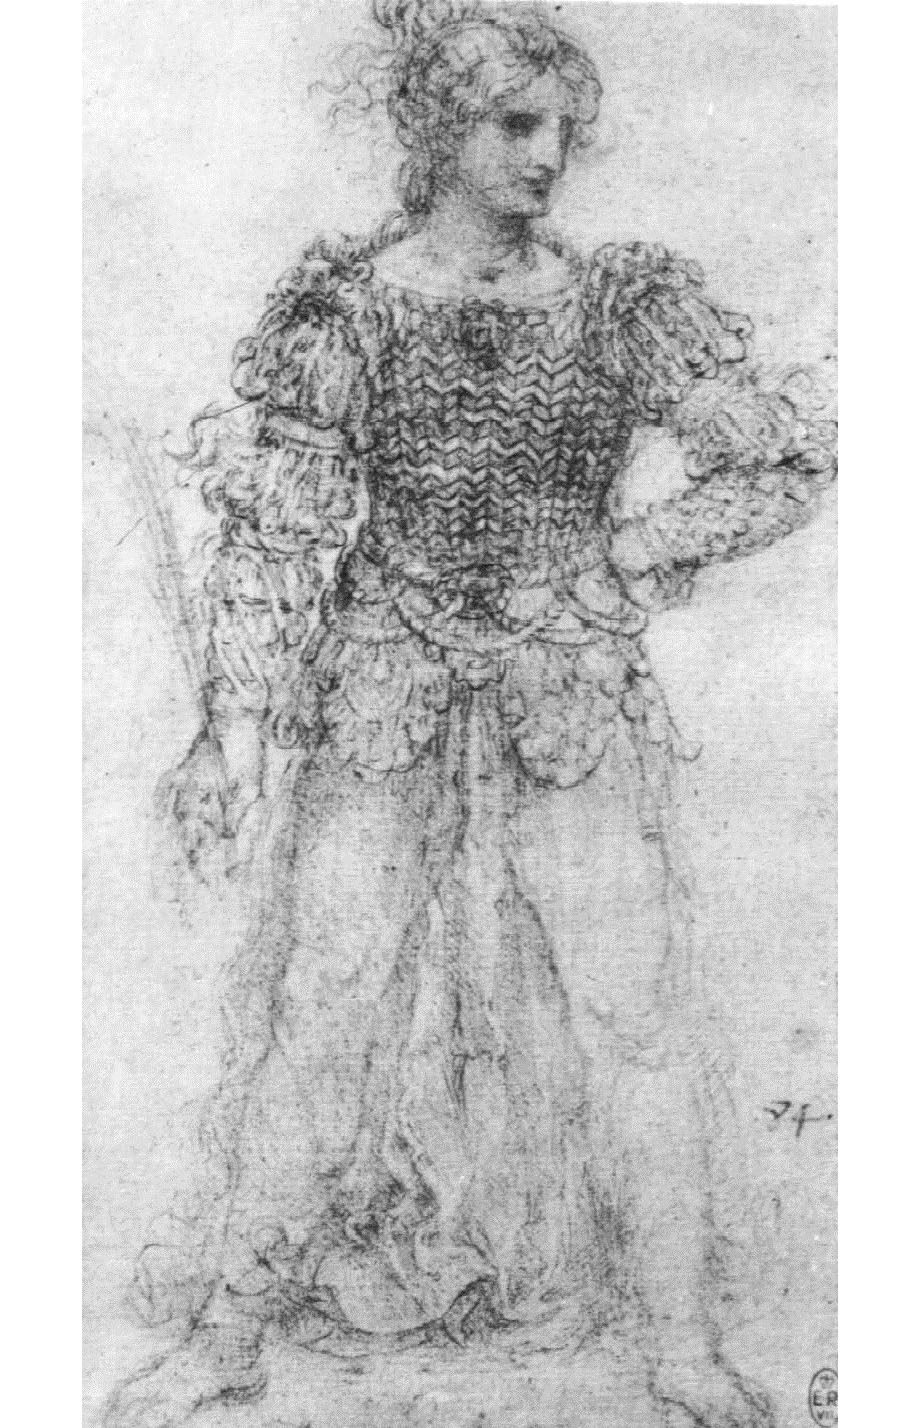 Леонардо да Винчи. "Фигура, затянутая в корсет из переплетённых лент". 1513.